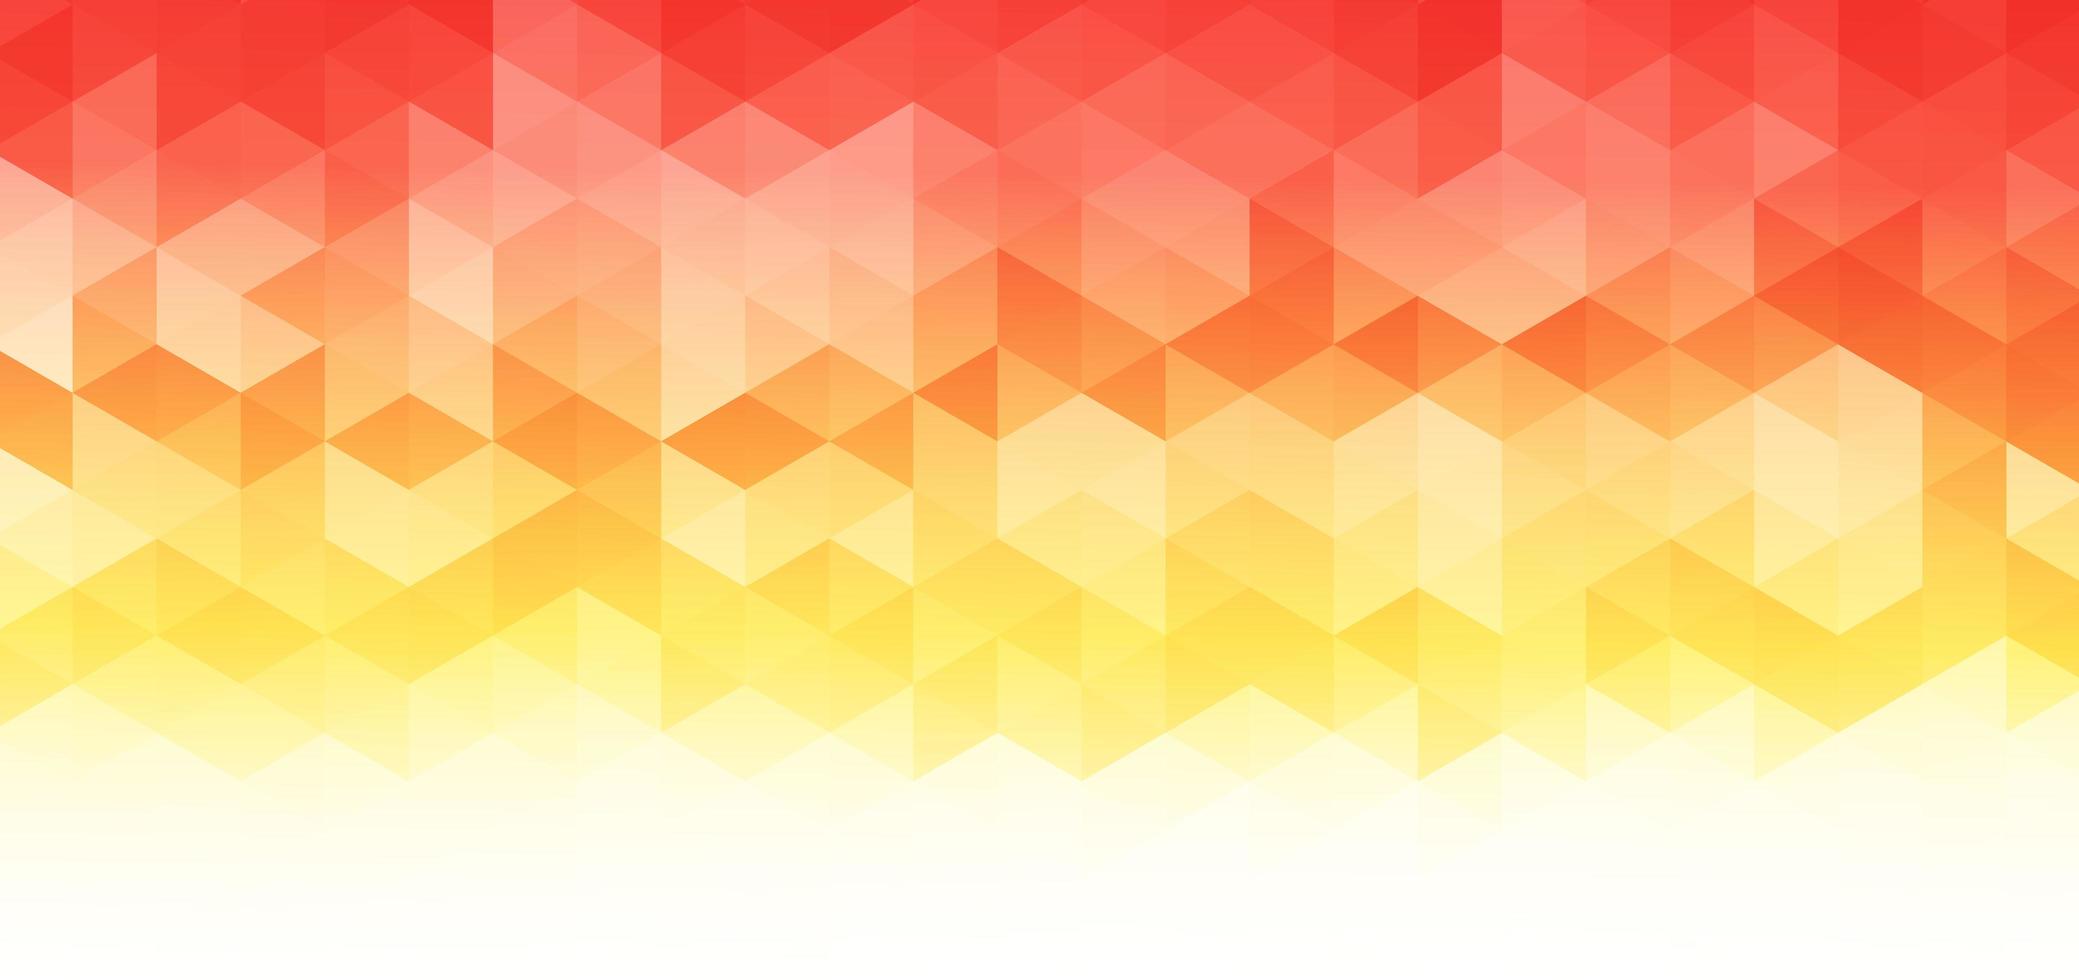 abstracte banner web geometrische zeshoek patroon licht geel, oranje, rood op een witte achtergrond met ruimte voor uw tekst. vector